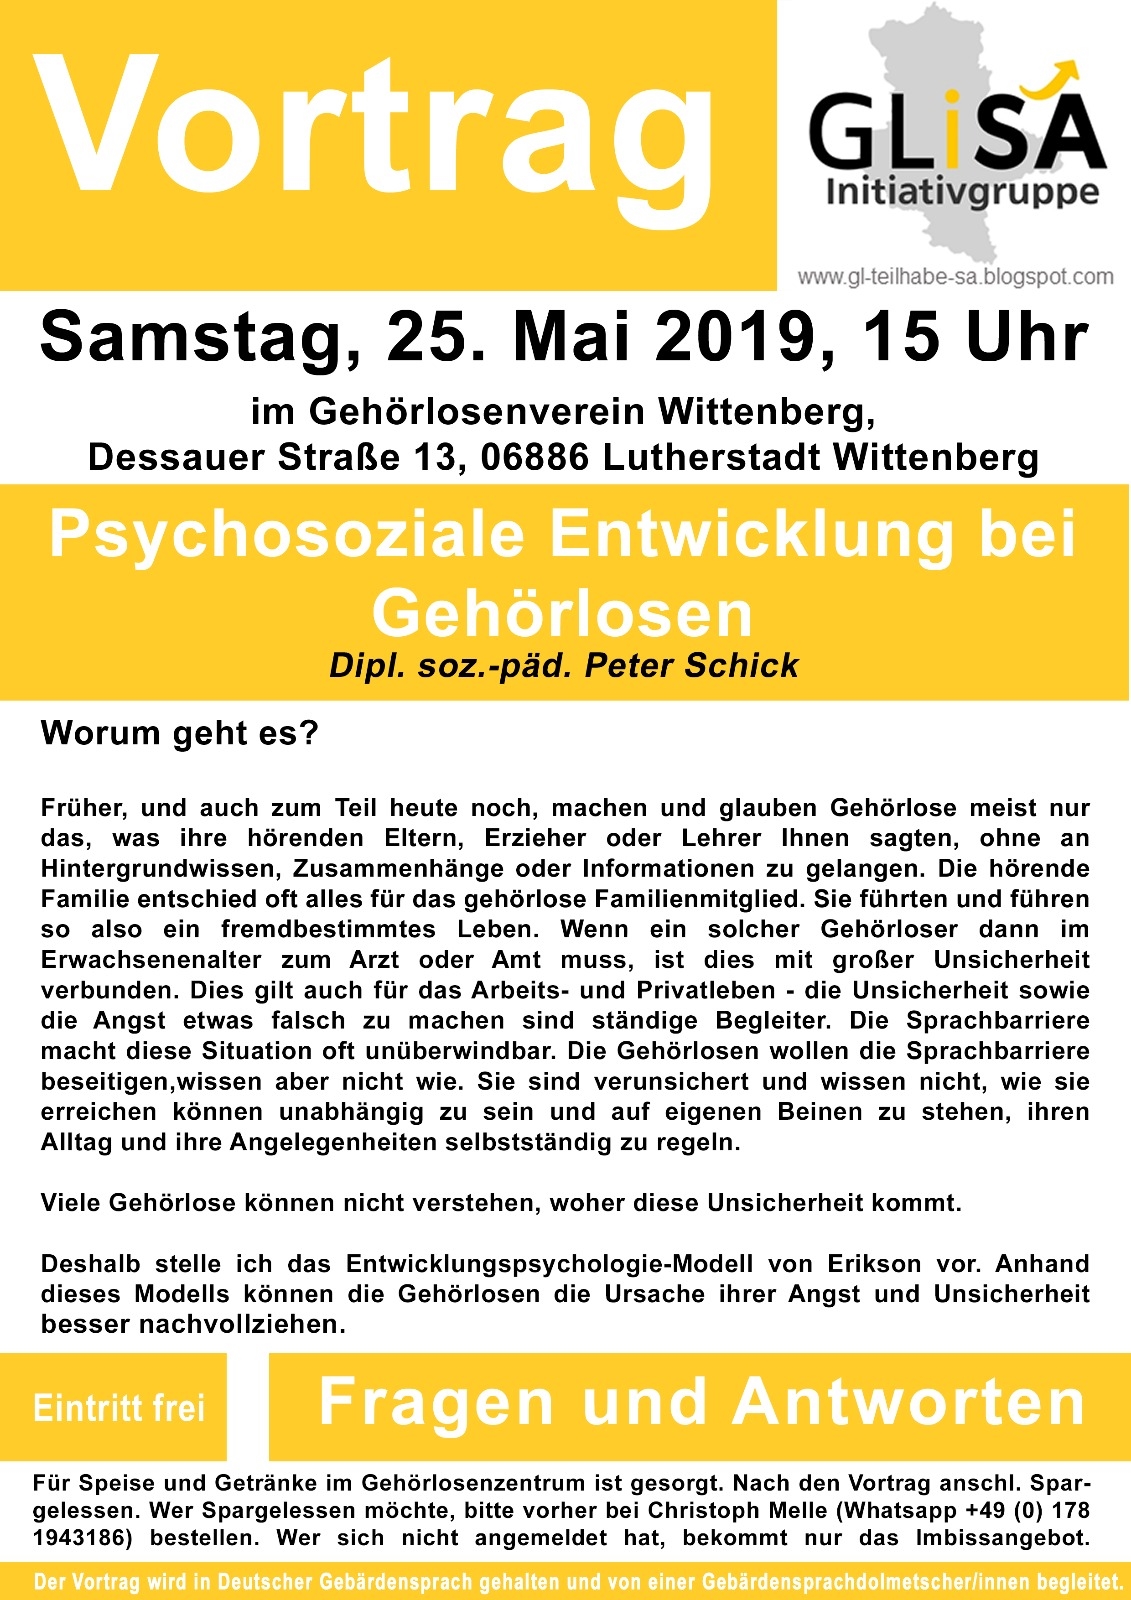 Vortrag in Wittenberg: Psychosoziale Entwicklung (Plakat)